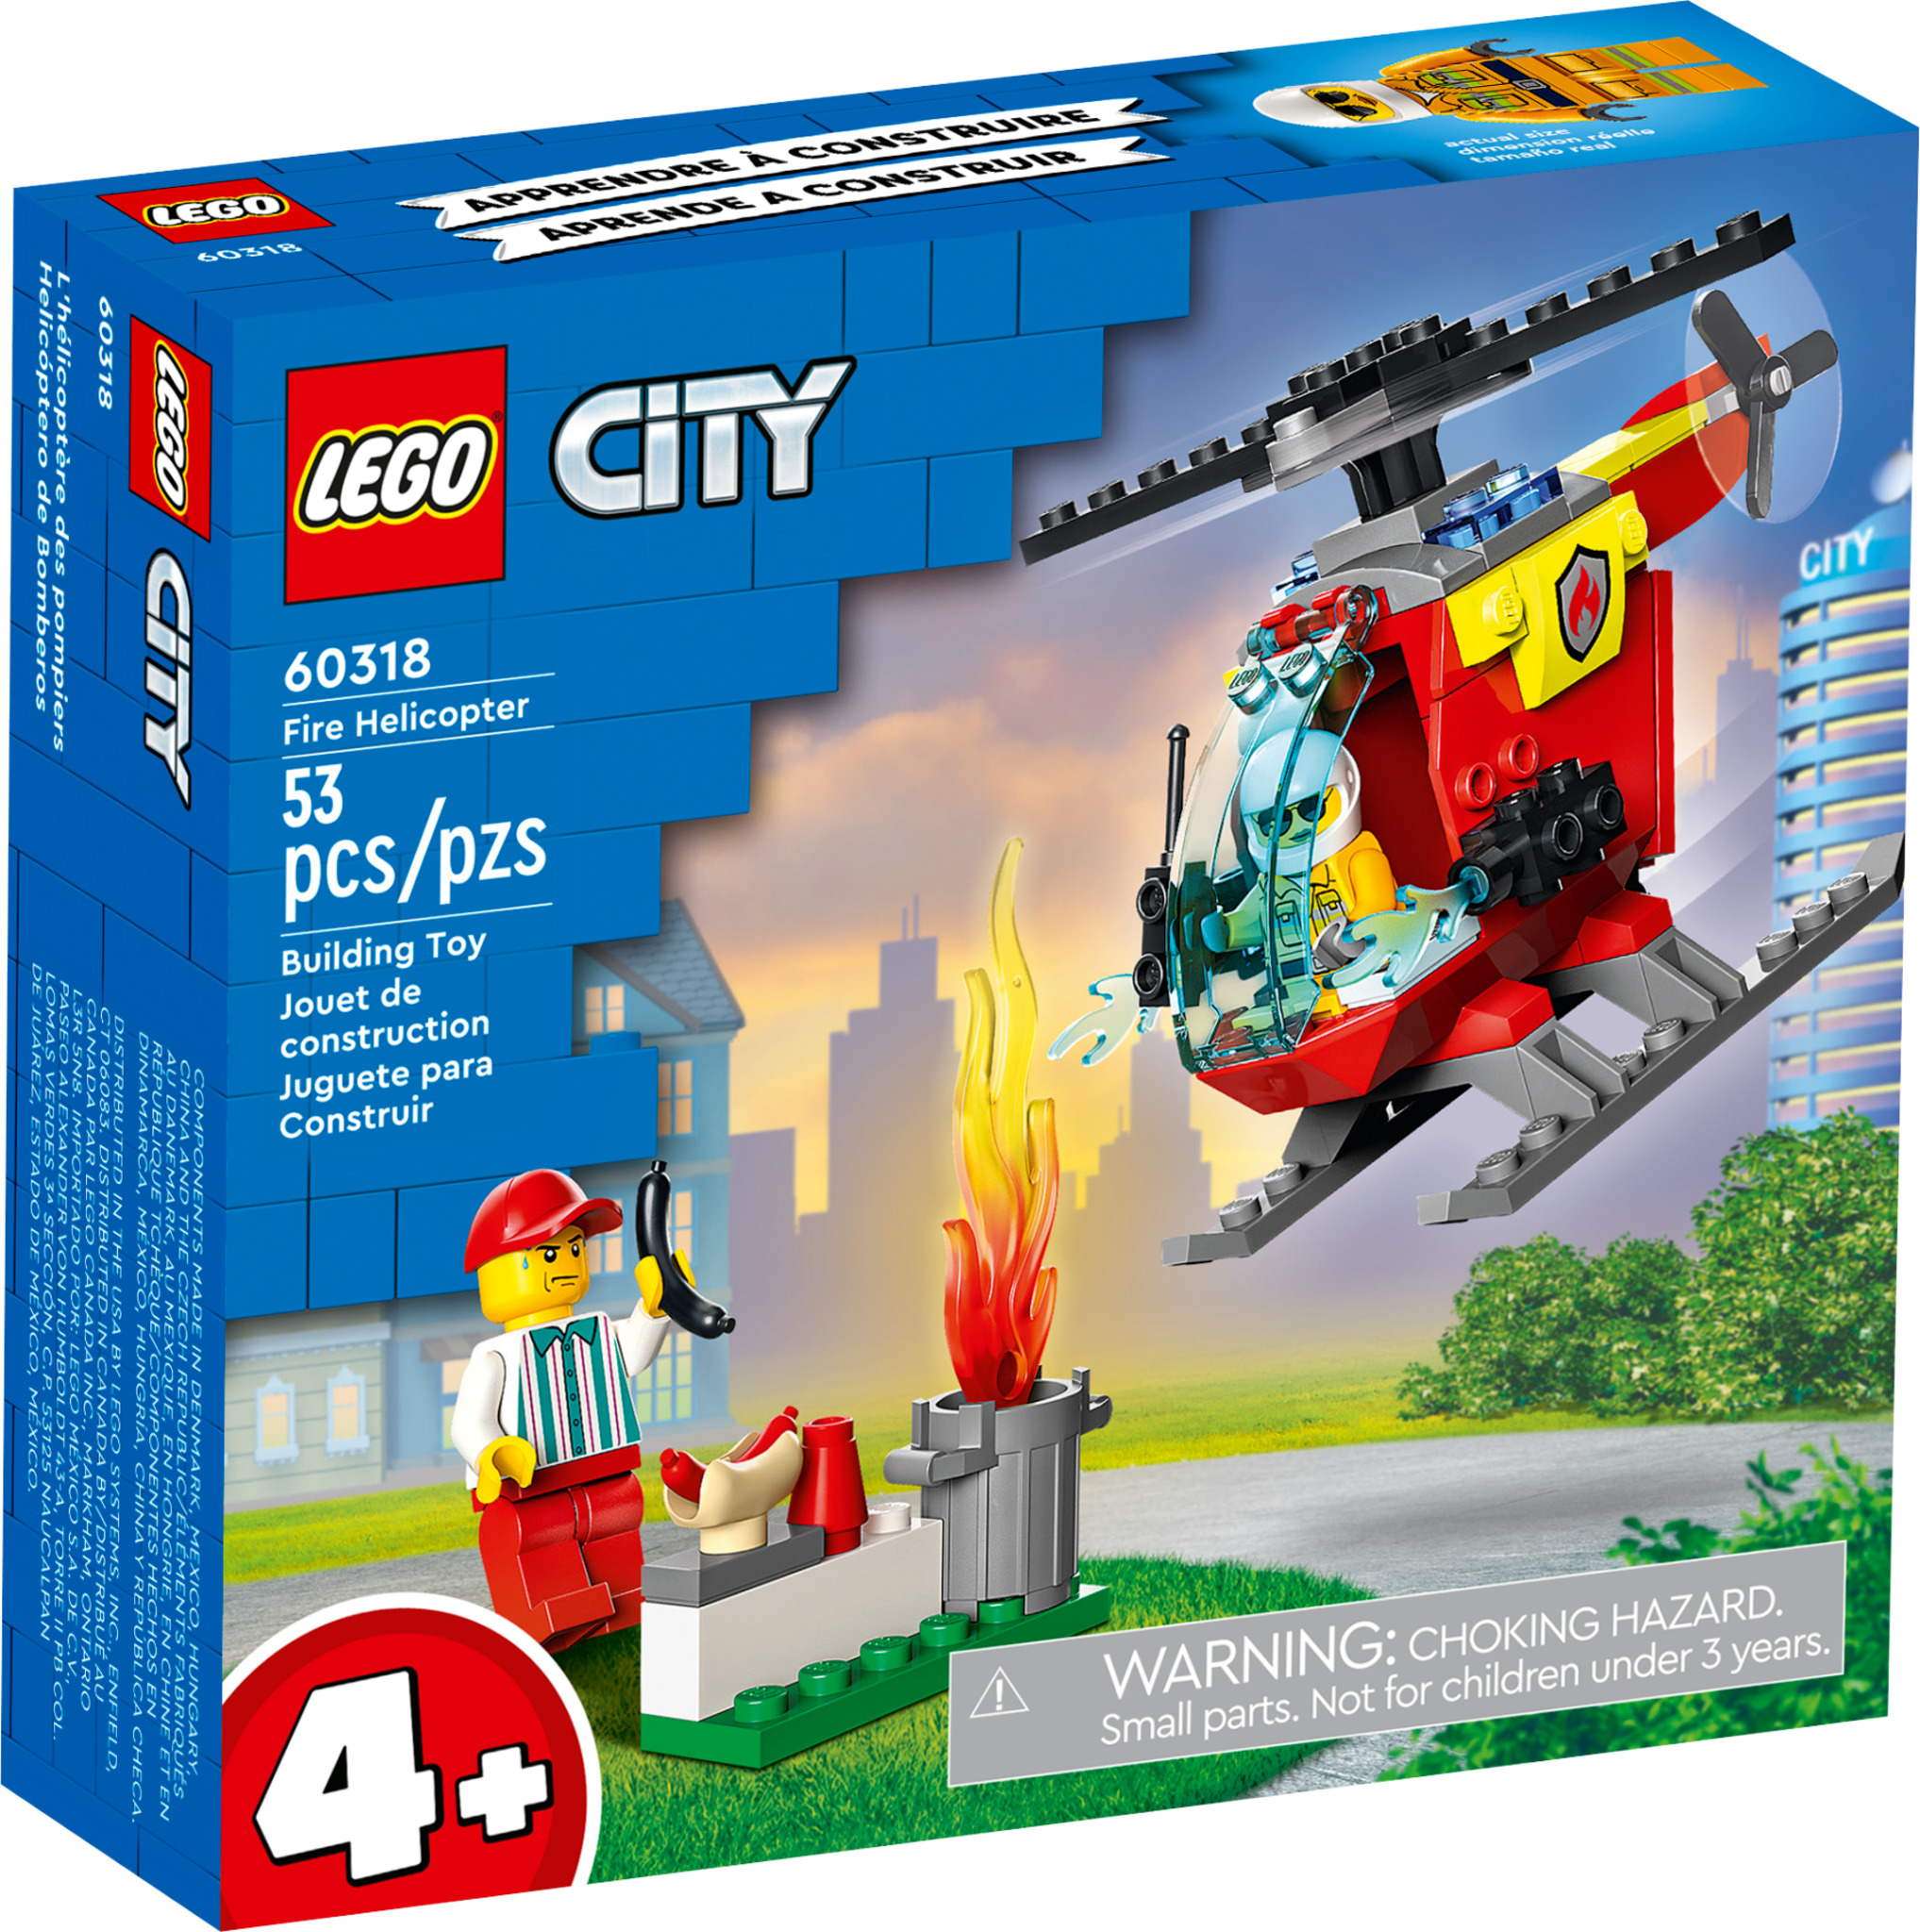 LEGO City Fire Elicottero Antincendio con 2 Minifigure